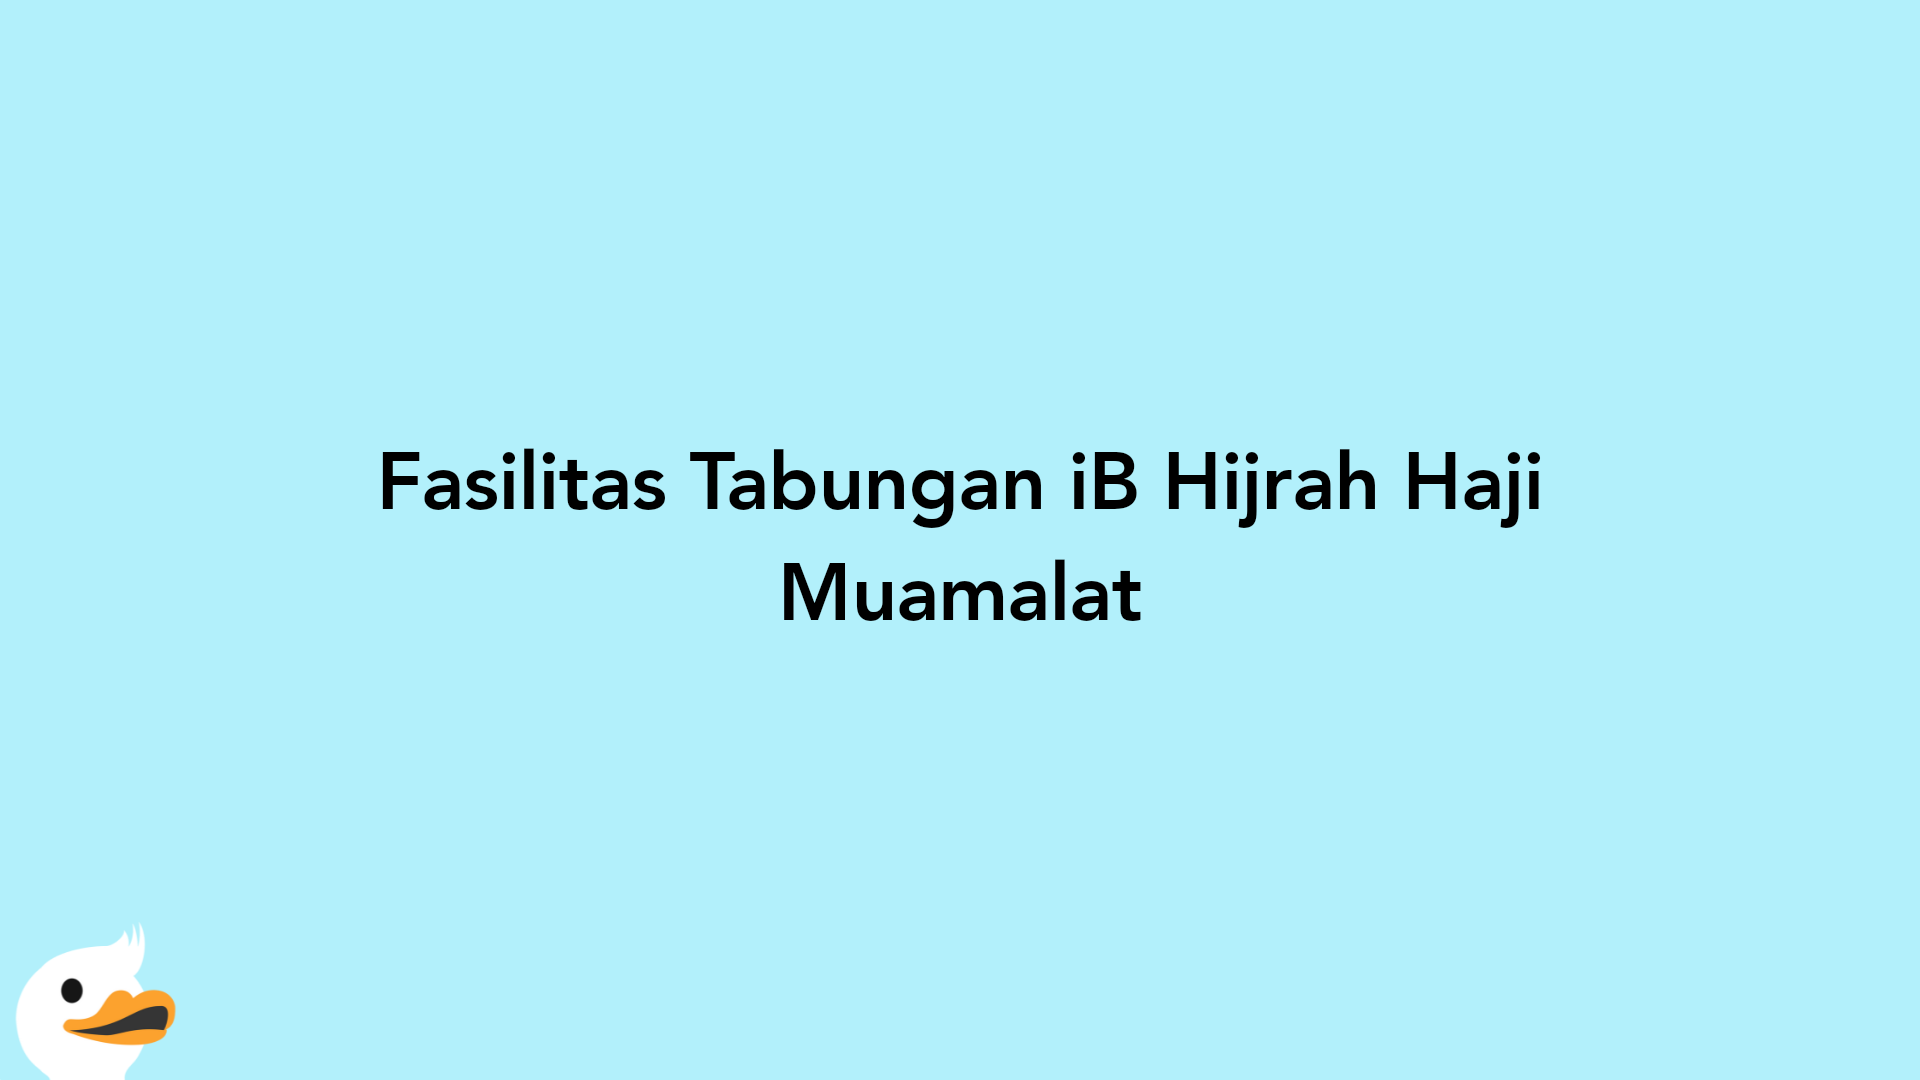 Fasilitas Tabungan iB Hijrah Haji Muamalat